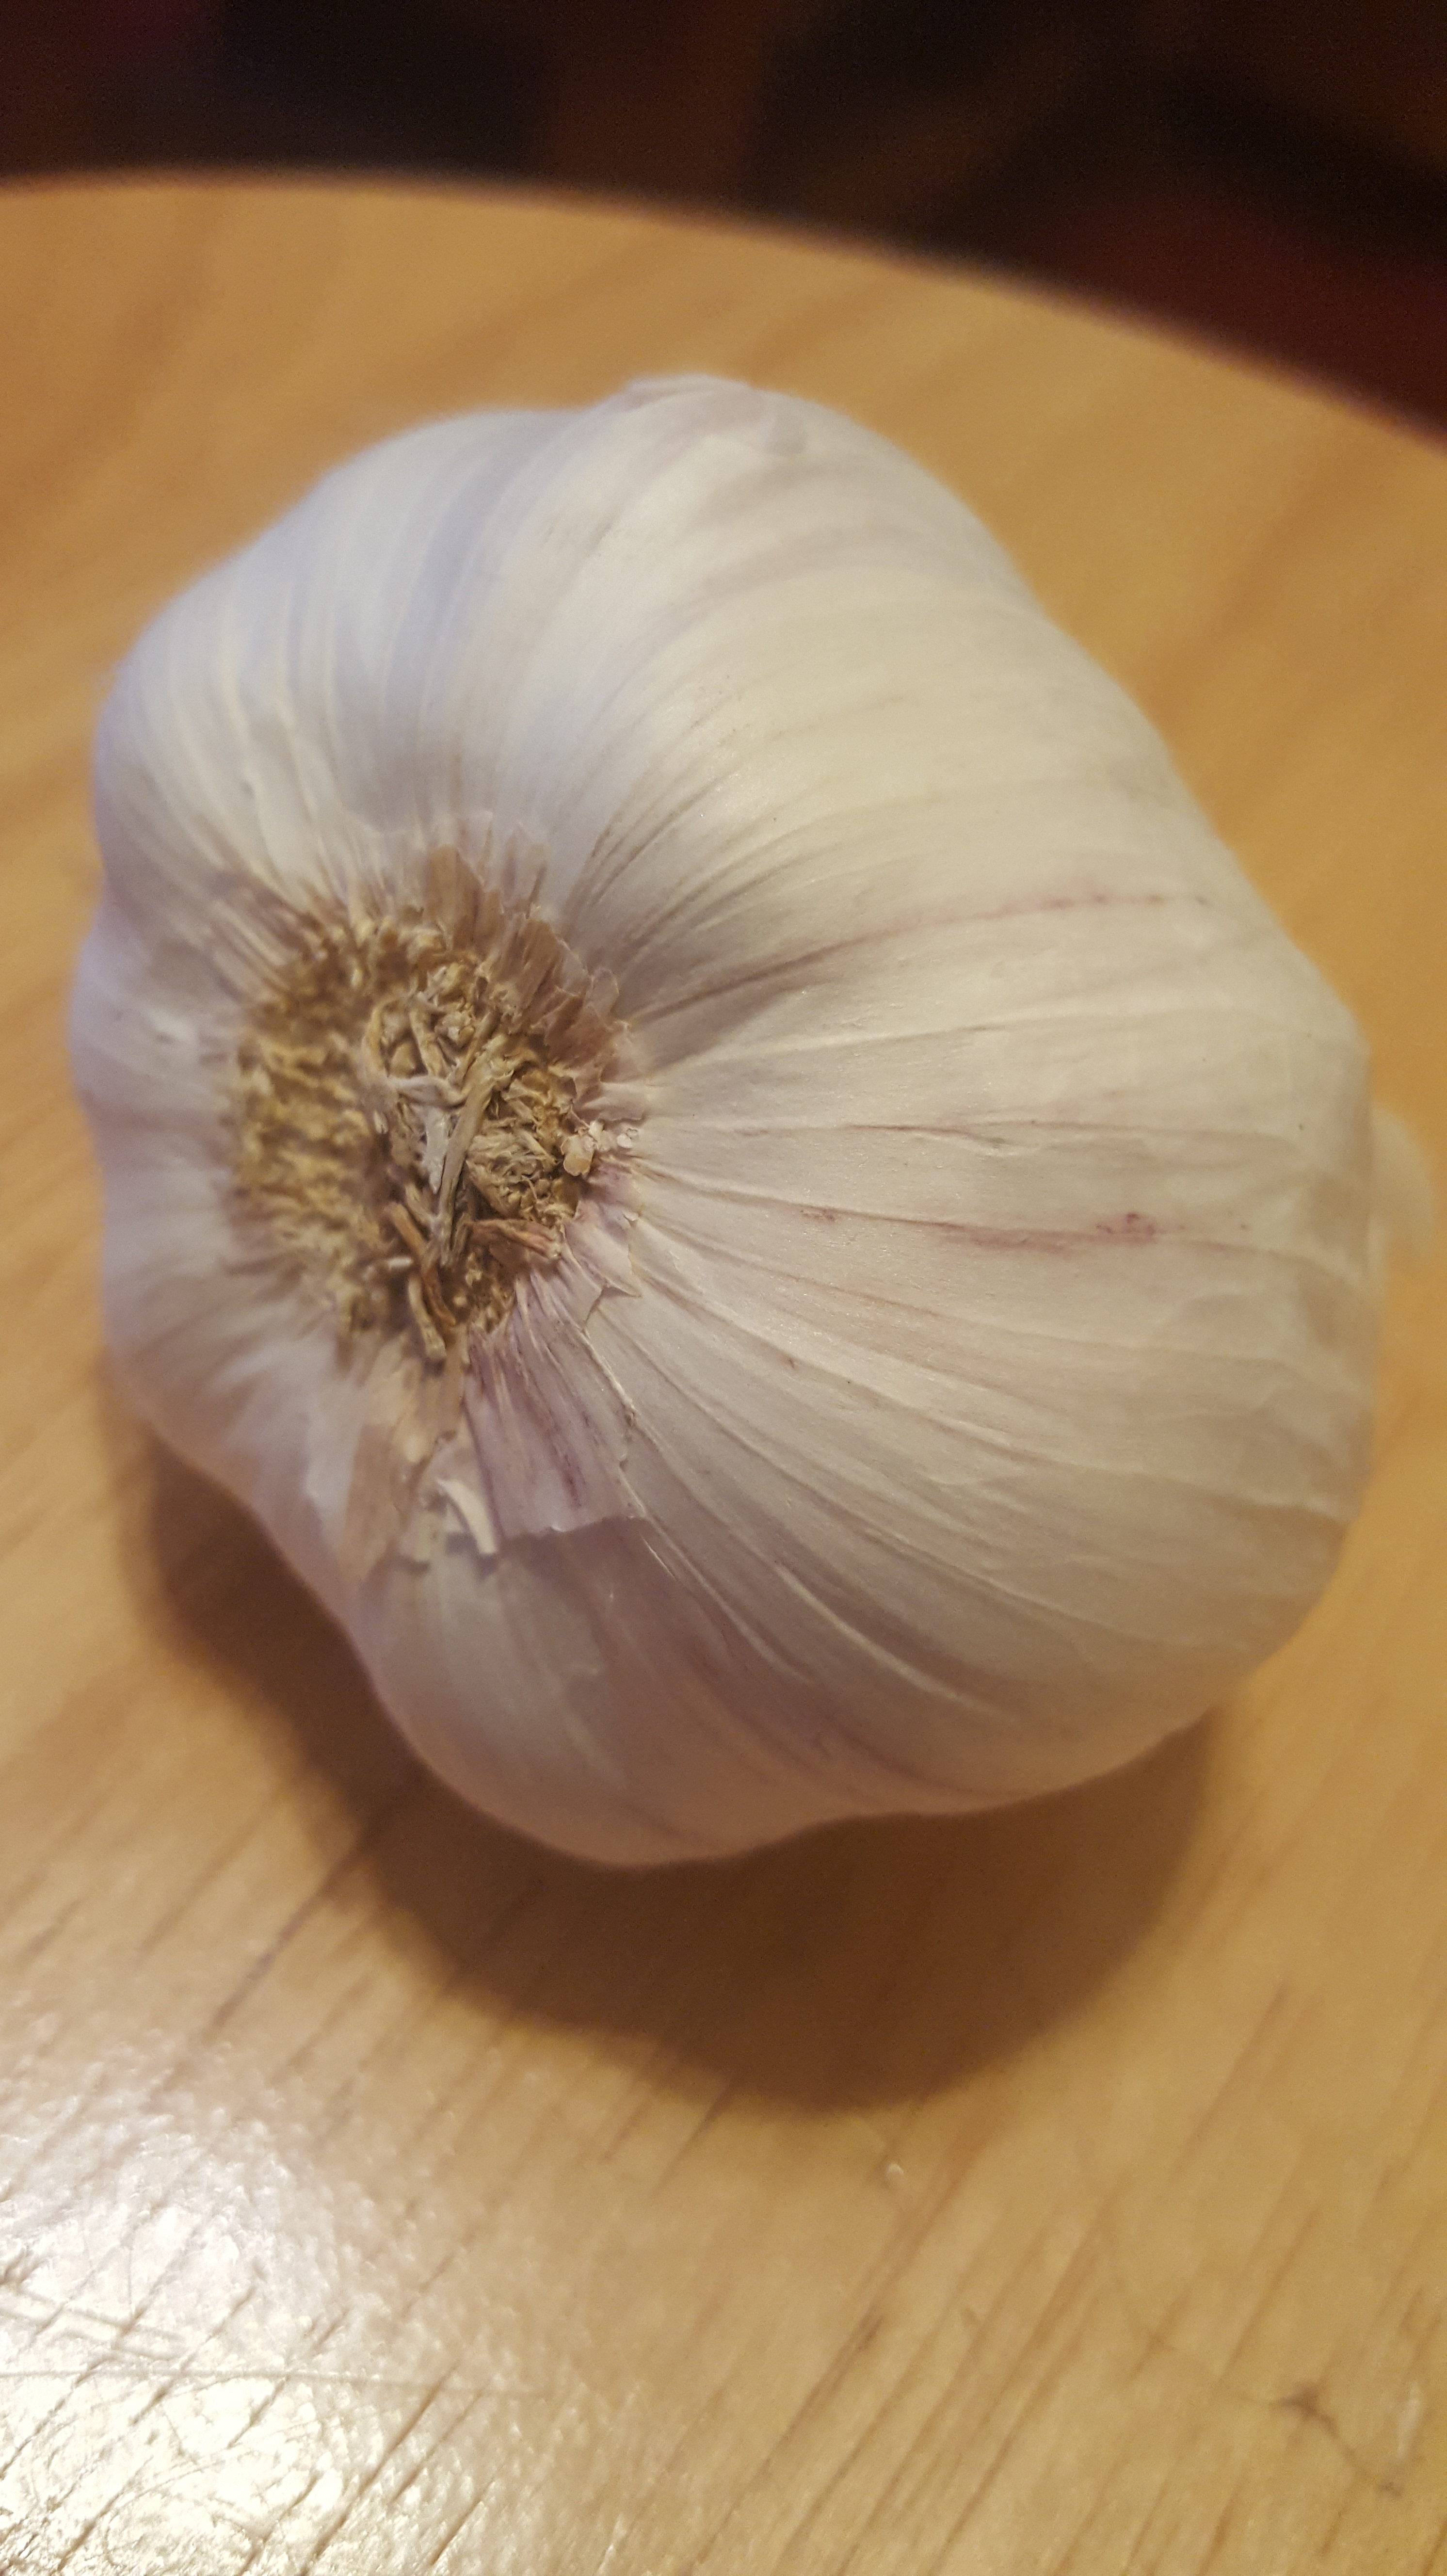 garlic treats psoriasis